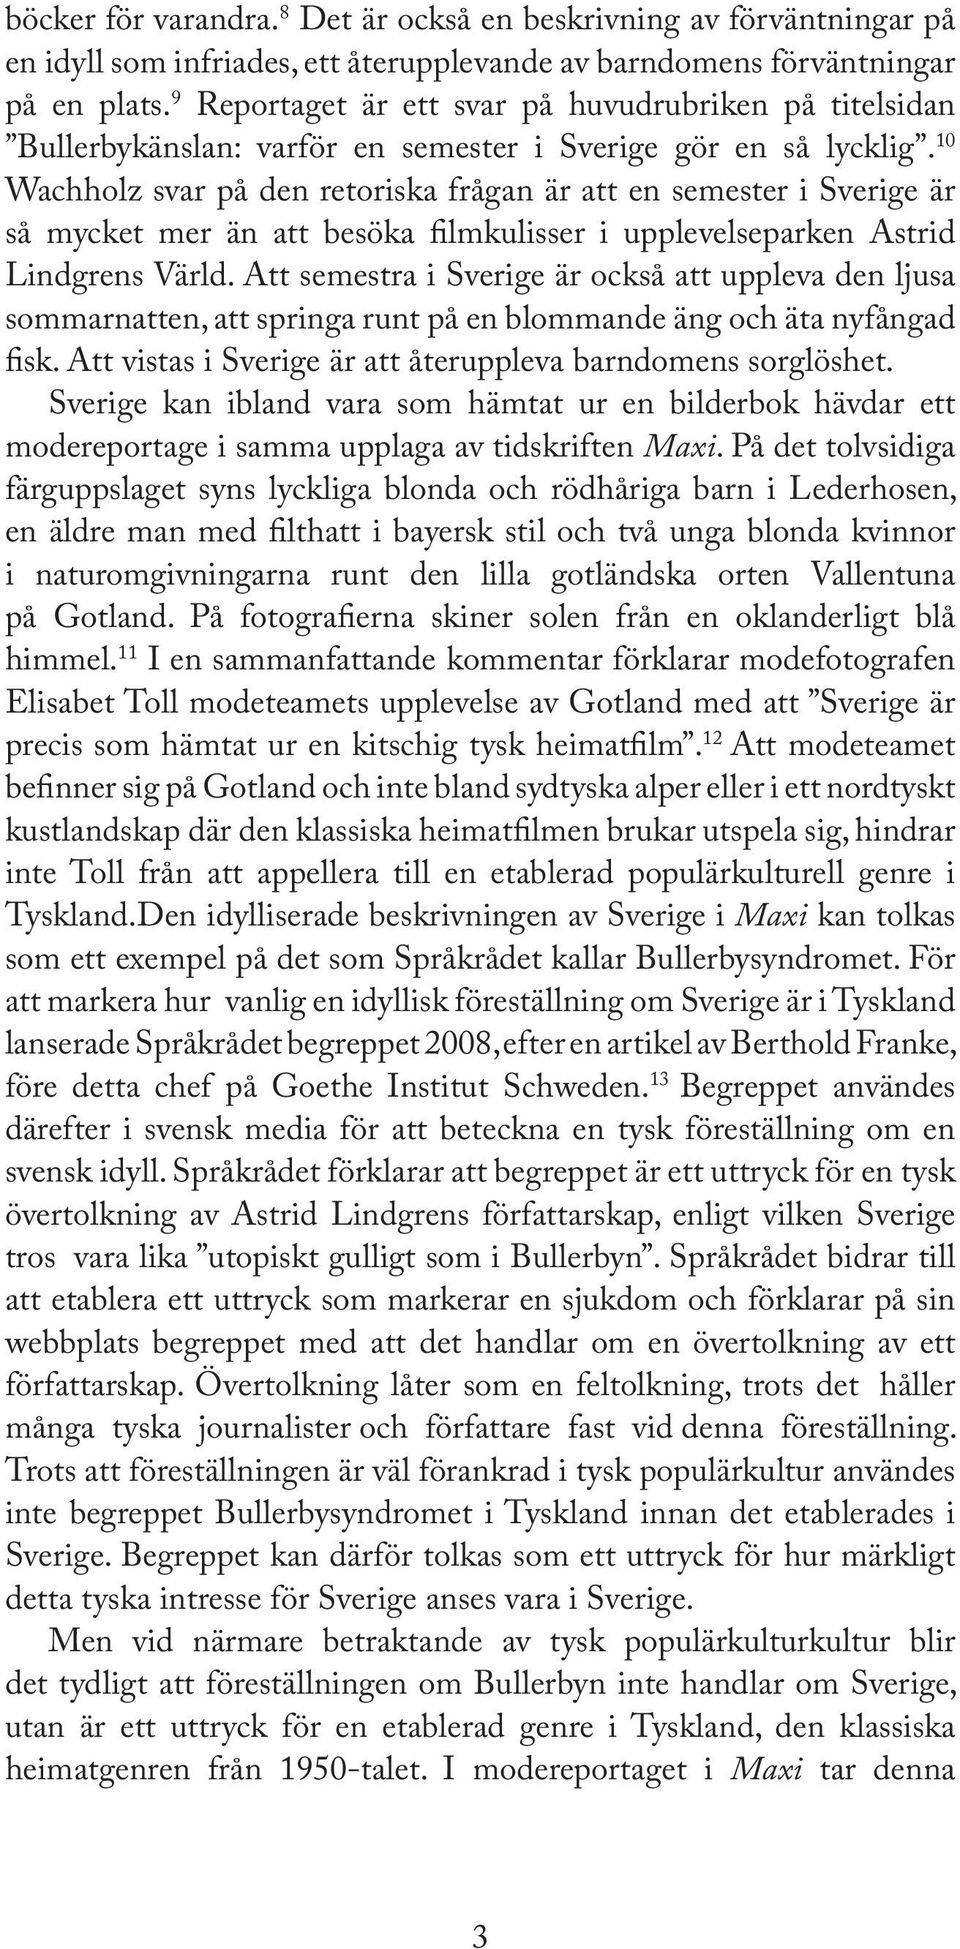 10 Wachholz svar på den retoriska frågan är att en semester i Sverige är så mycket mer än att besöka lmkulisser i upplevelseparken Astrid Lindgrens Värld.